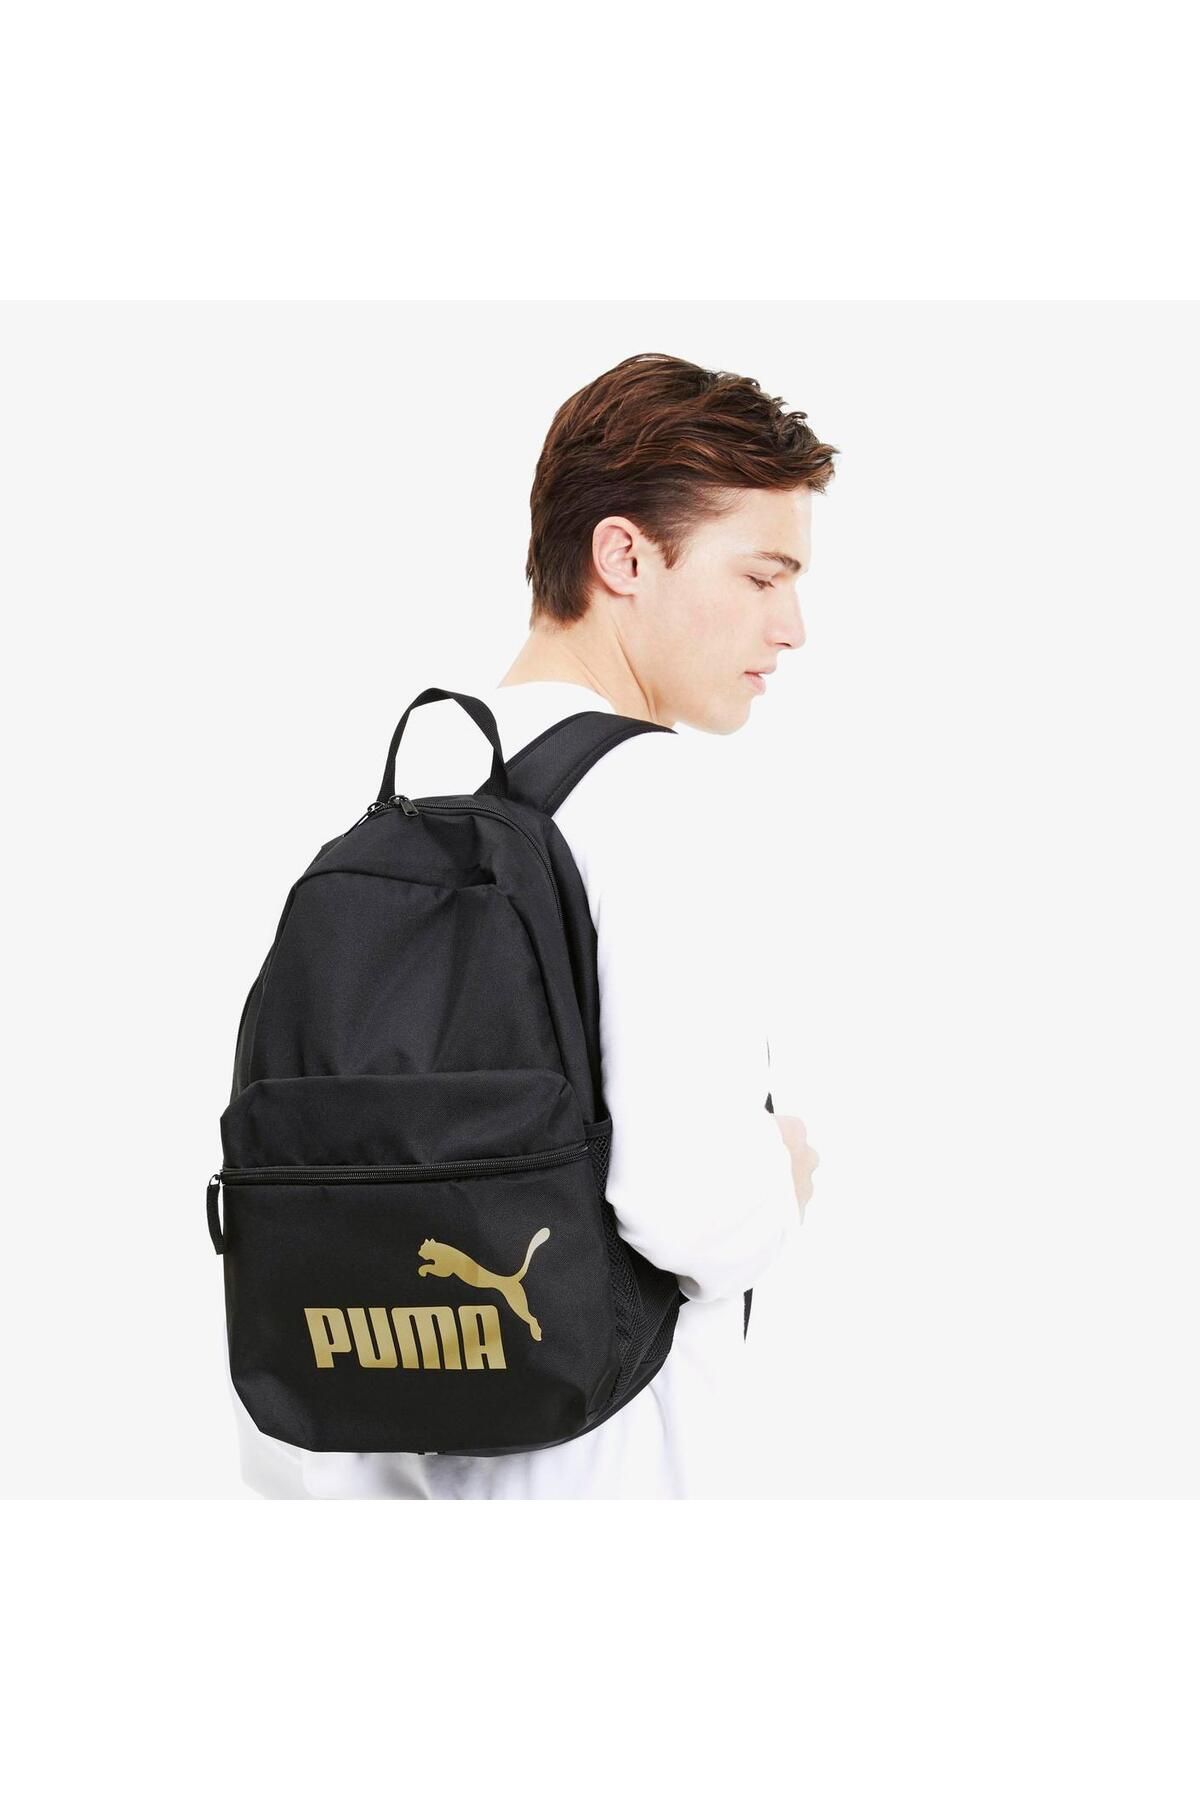 Puma Phase Backpack Black-golden Logo